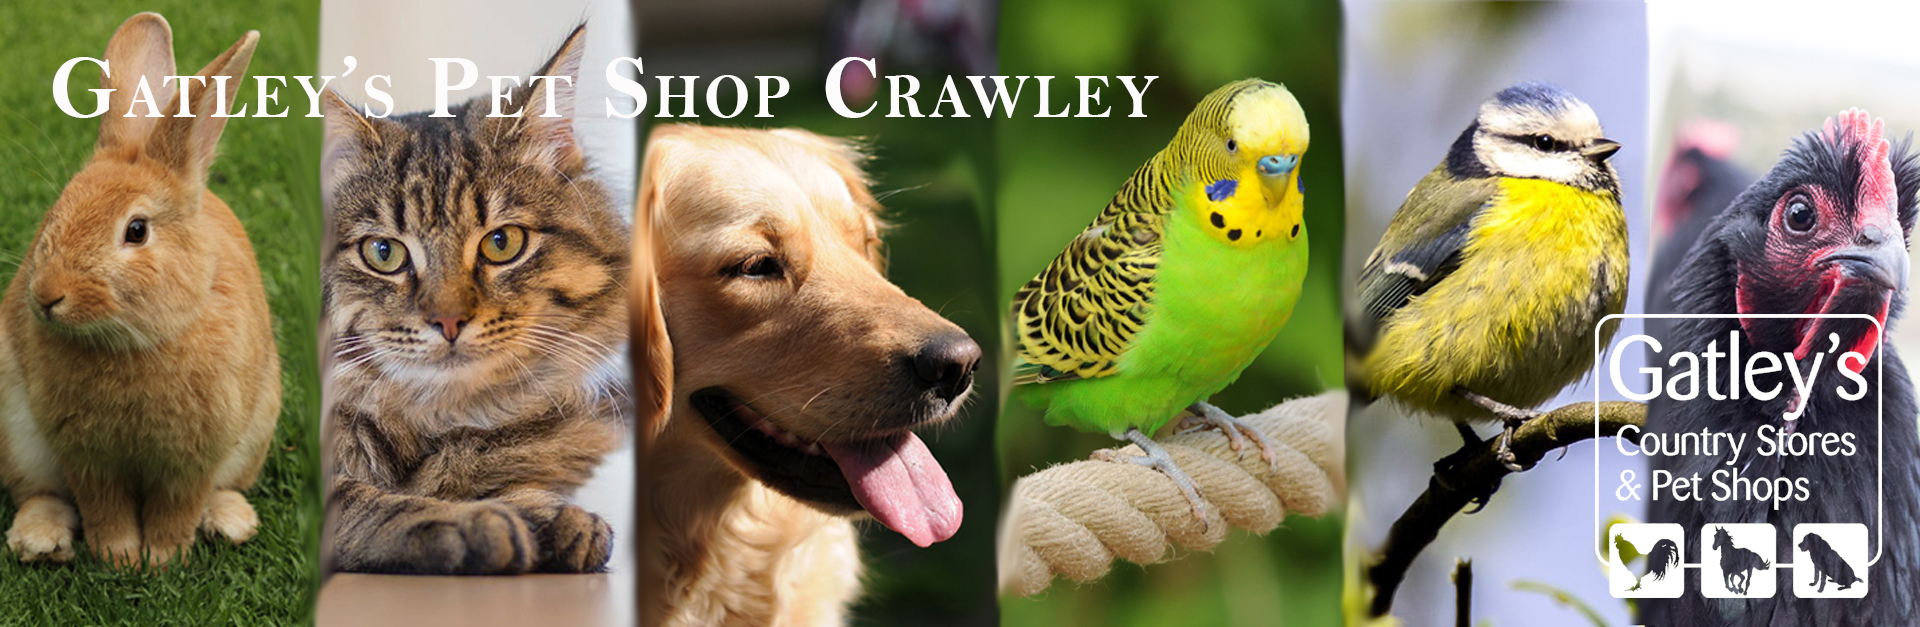 Gatley's pet shop Crawley